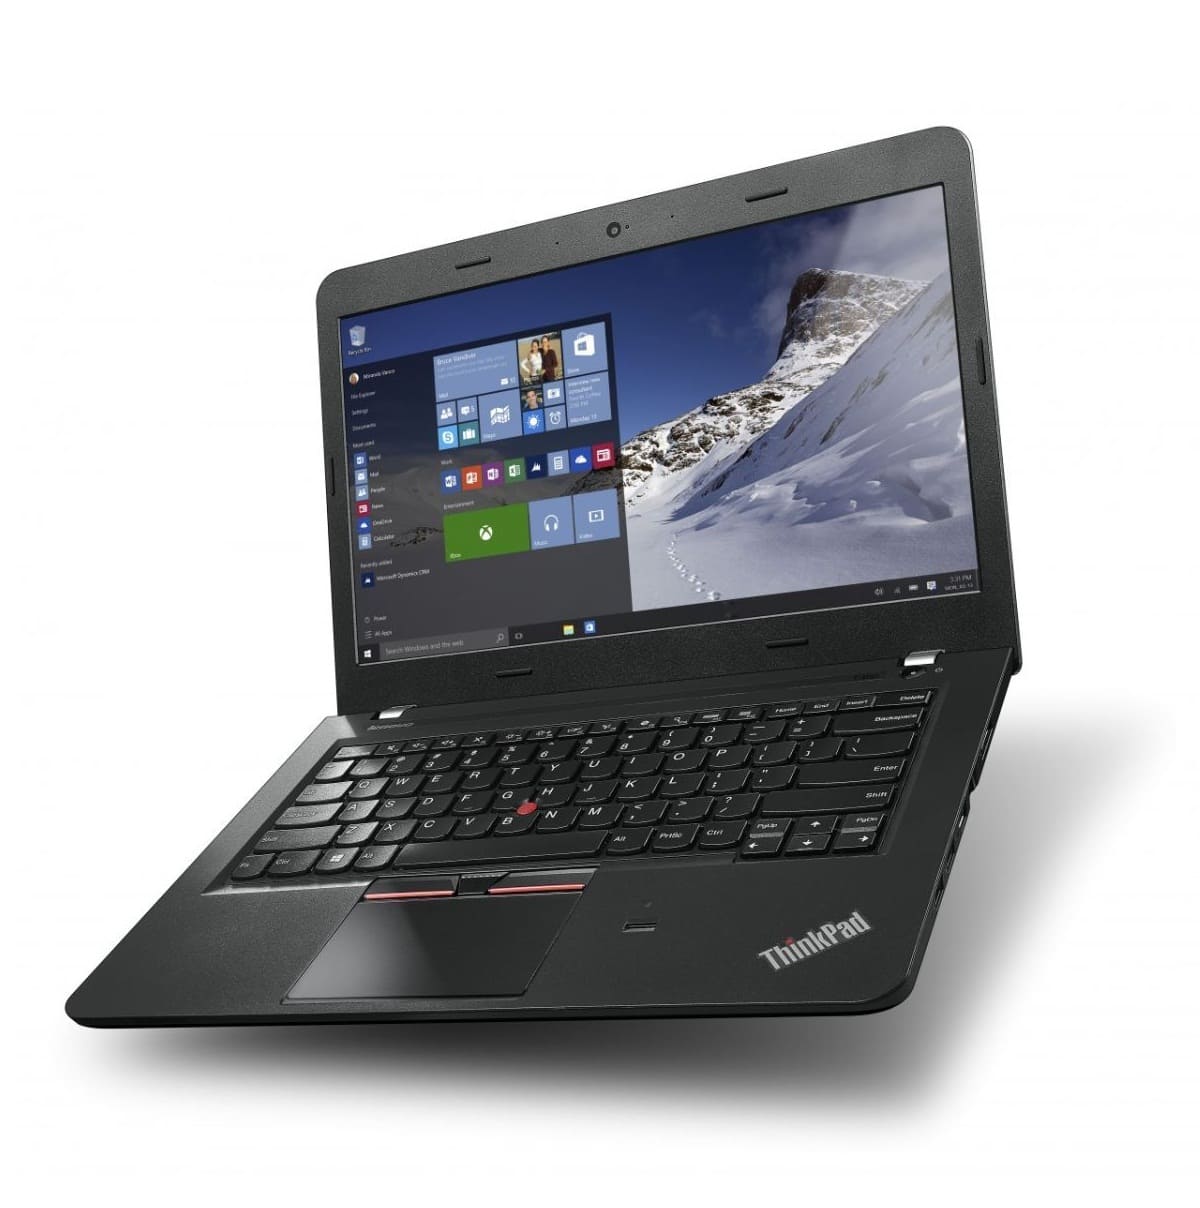 Laptop Lenovo Thinkpad E460 20ETA021VN – Thiết kế bền bỉ, hiểu năng vượt trội